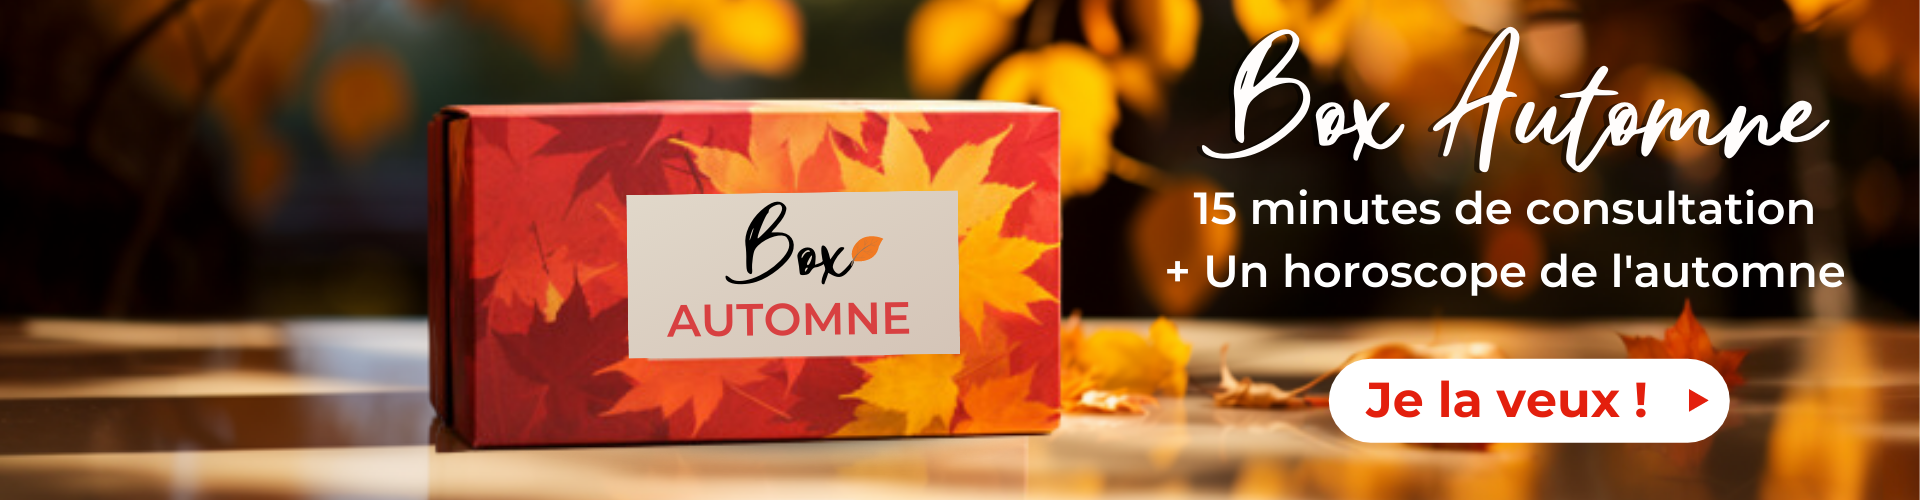 box automne